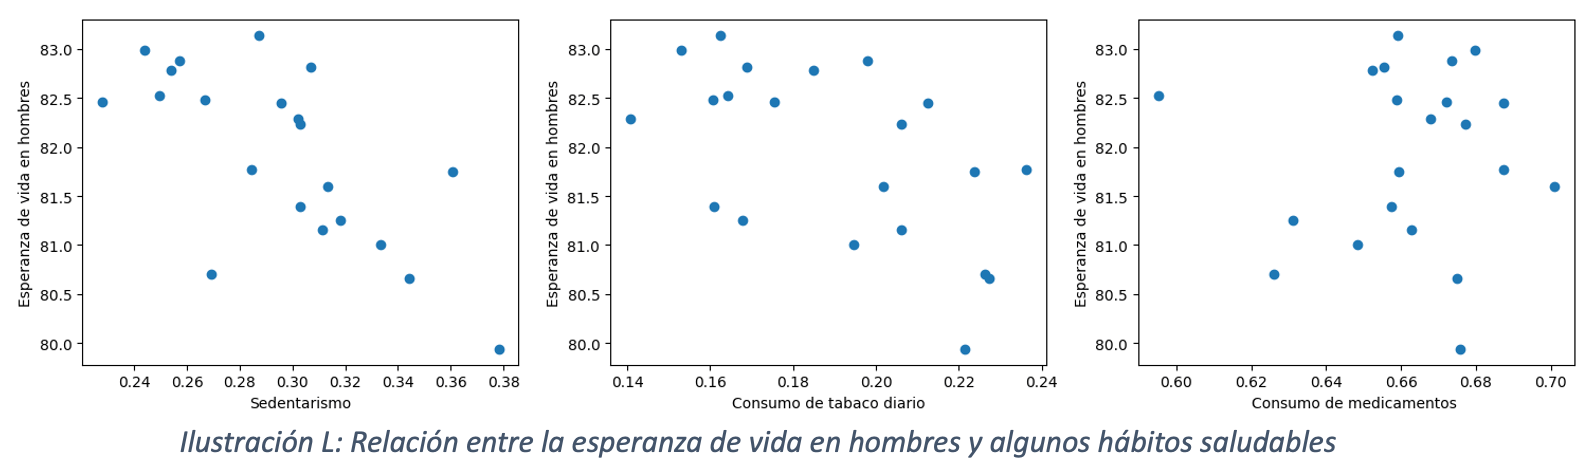 Ilustración L : Relación entre la esperanza de vida en hombres y algunos hábitos saludables